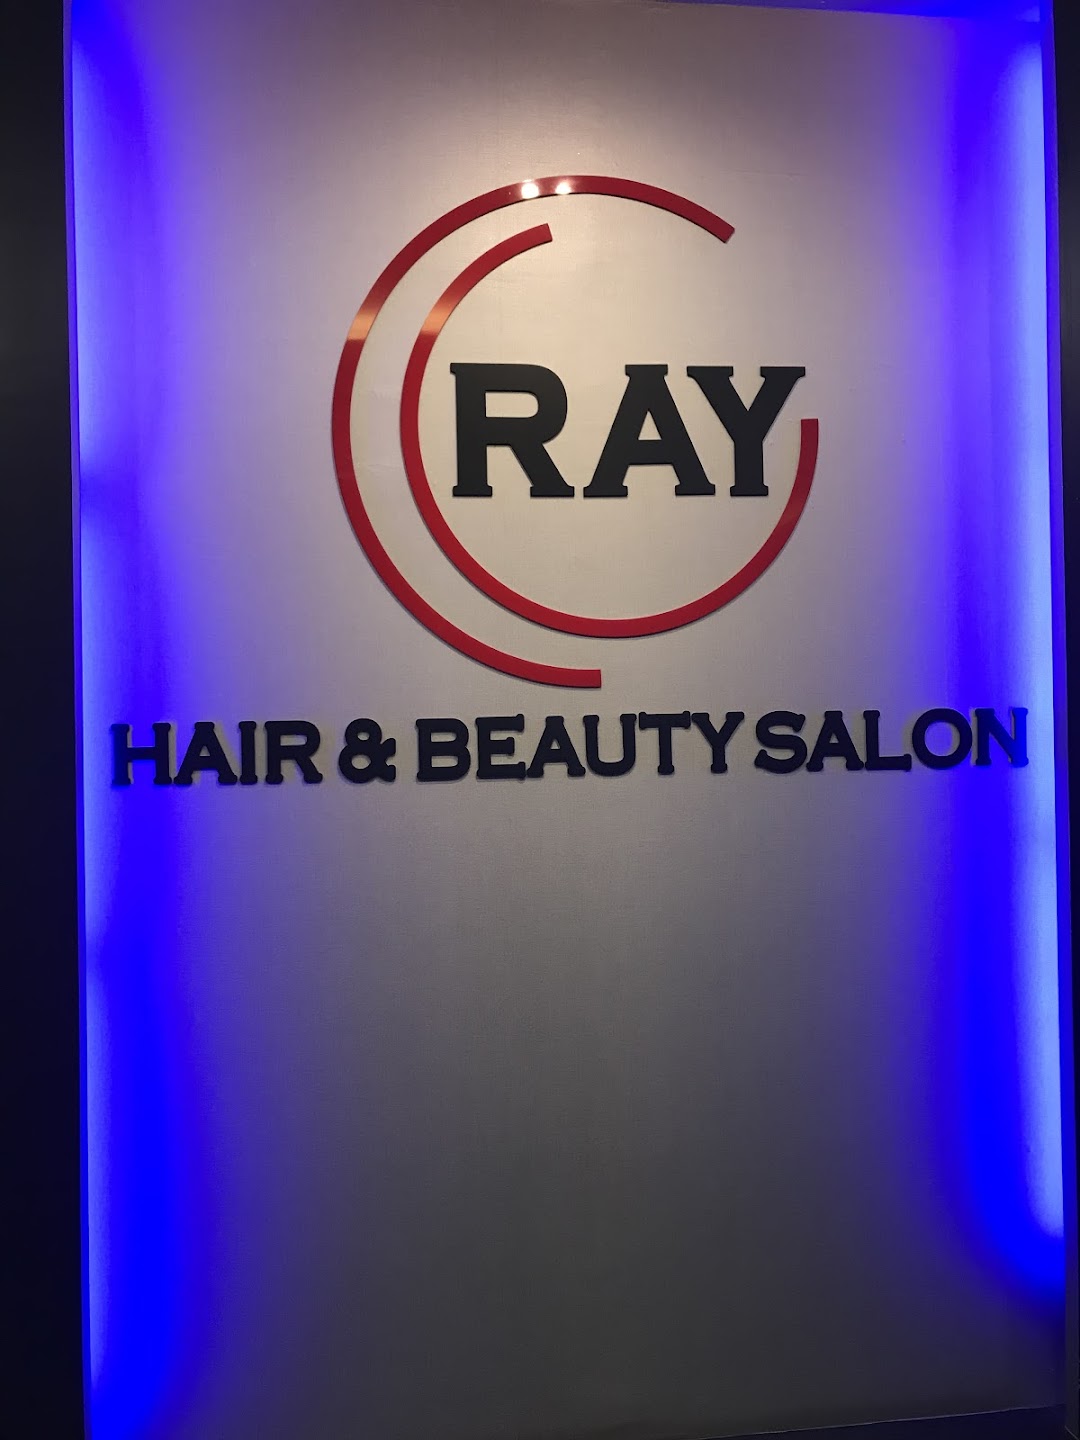 RAY HAIR & BEAUTY SALON